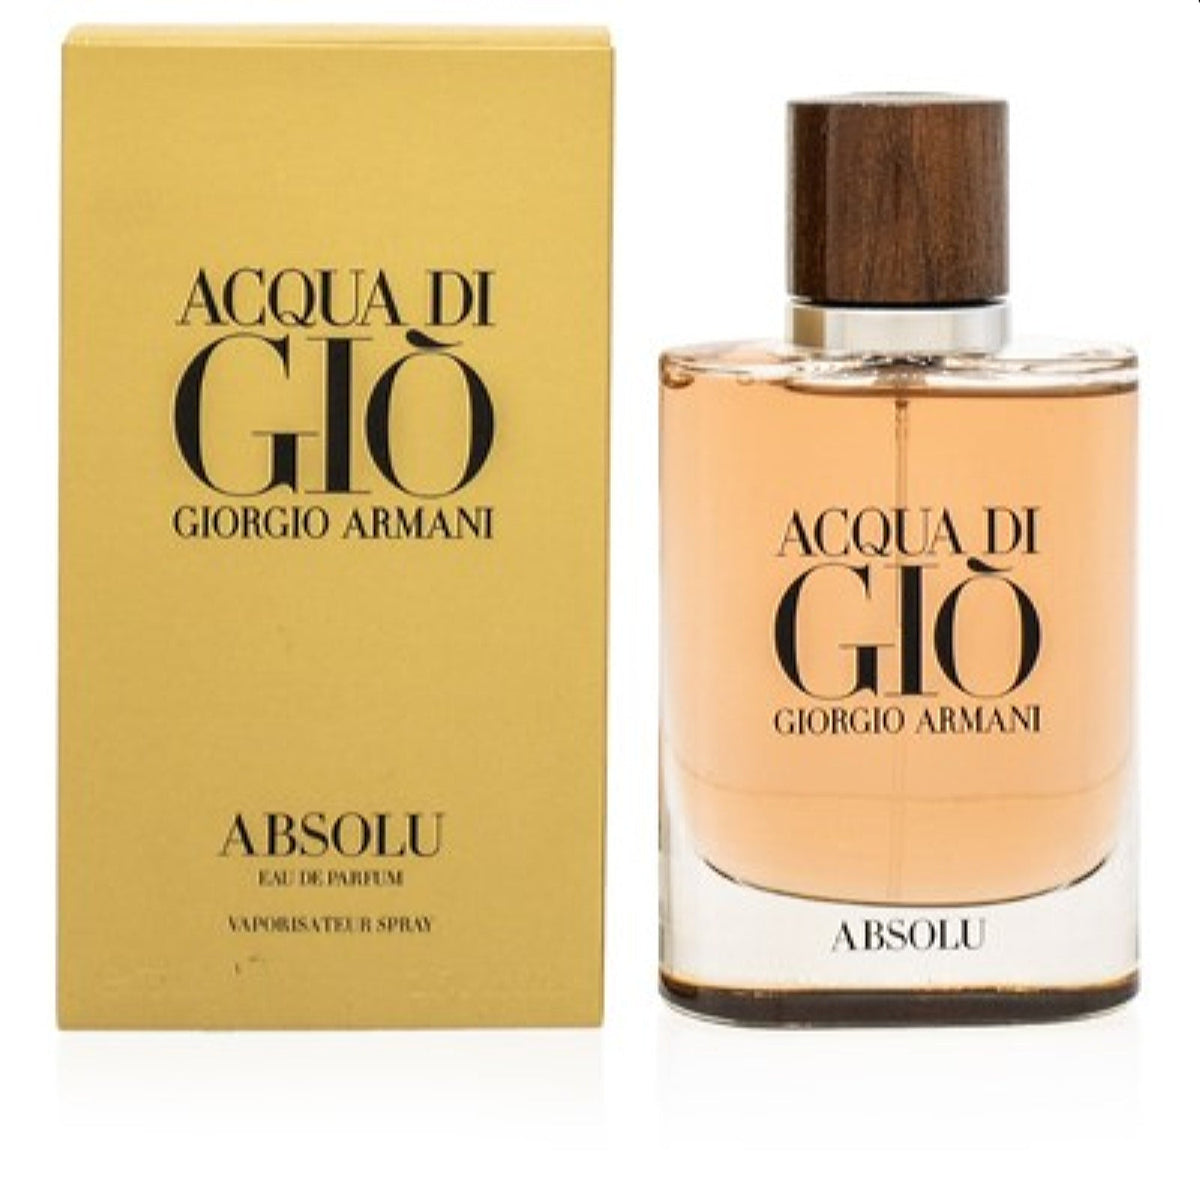 Acqua Di Gio Absolu Giorgio Armani Edp Spray 2.5 Oz (75 Ml) For Men  